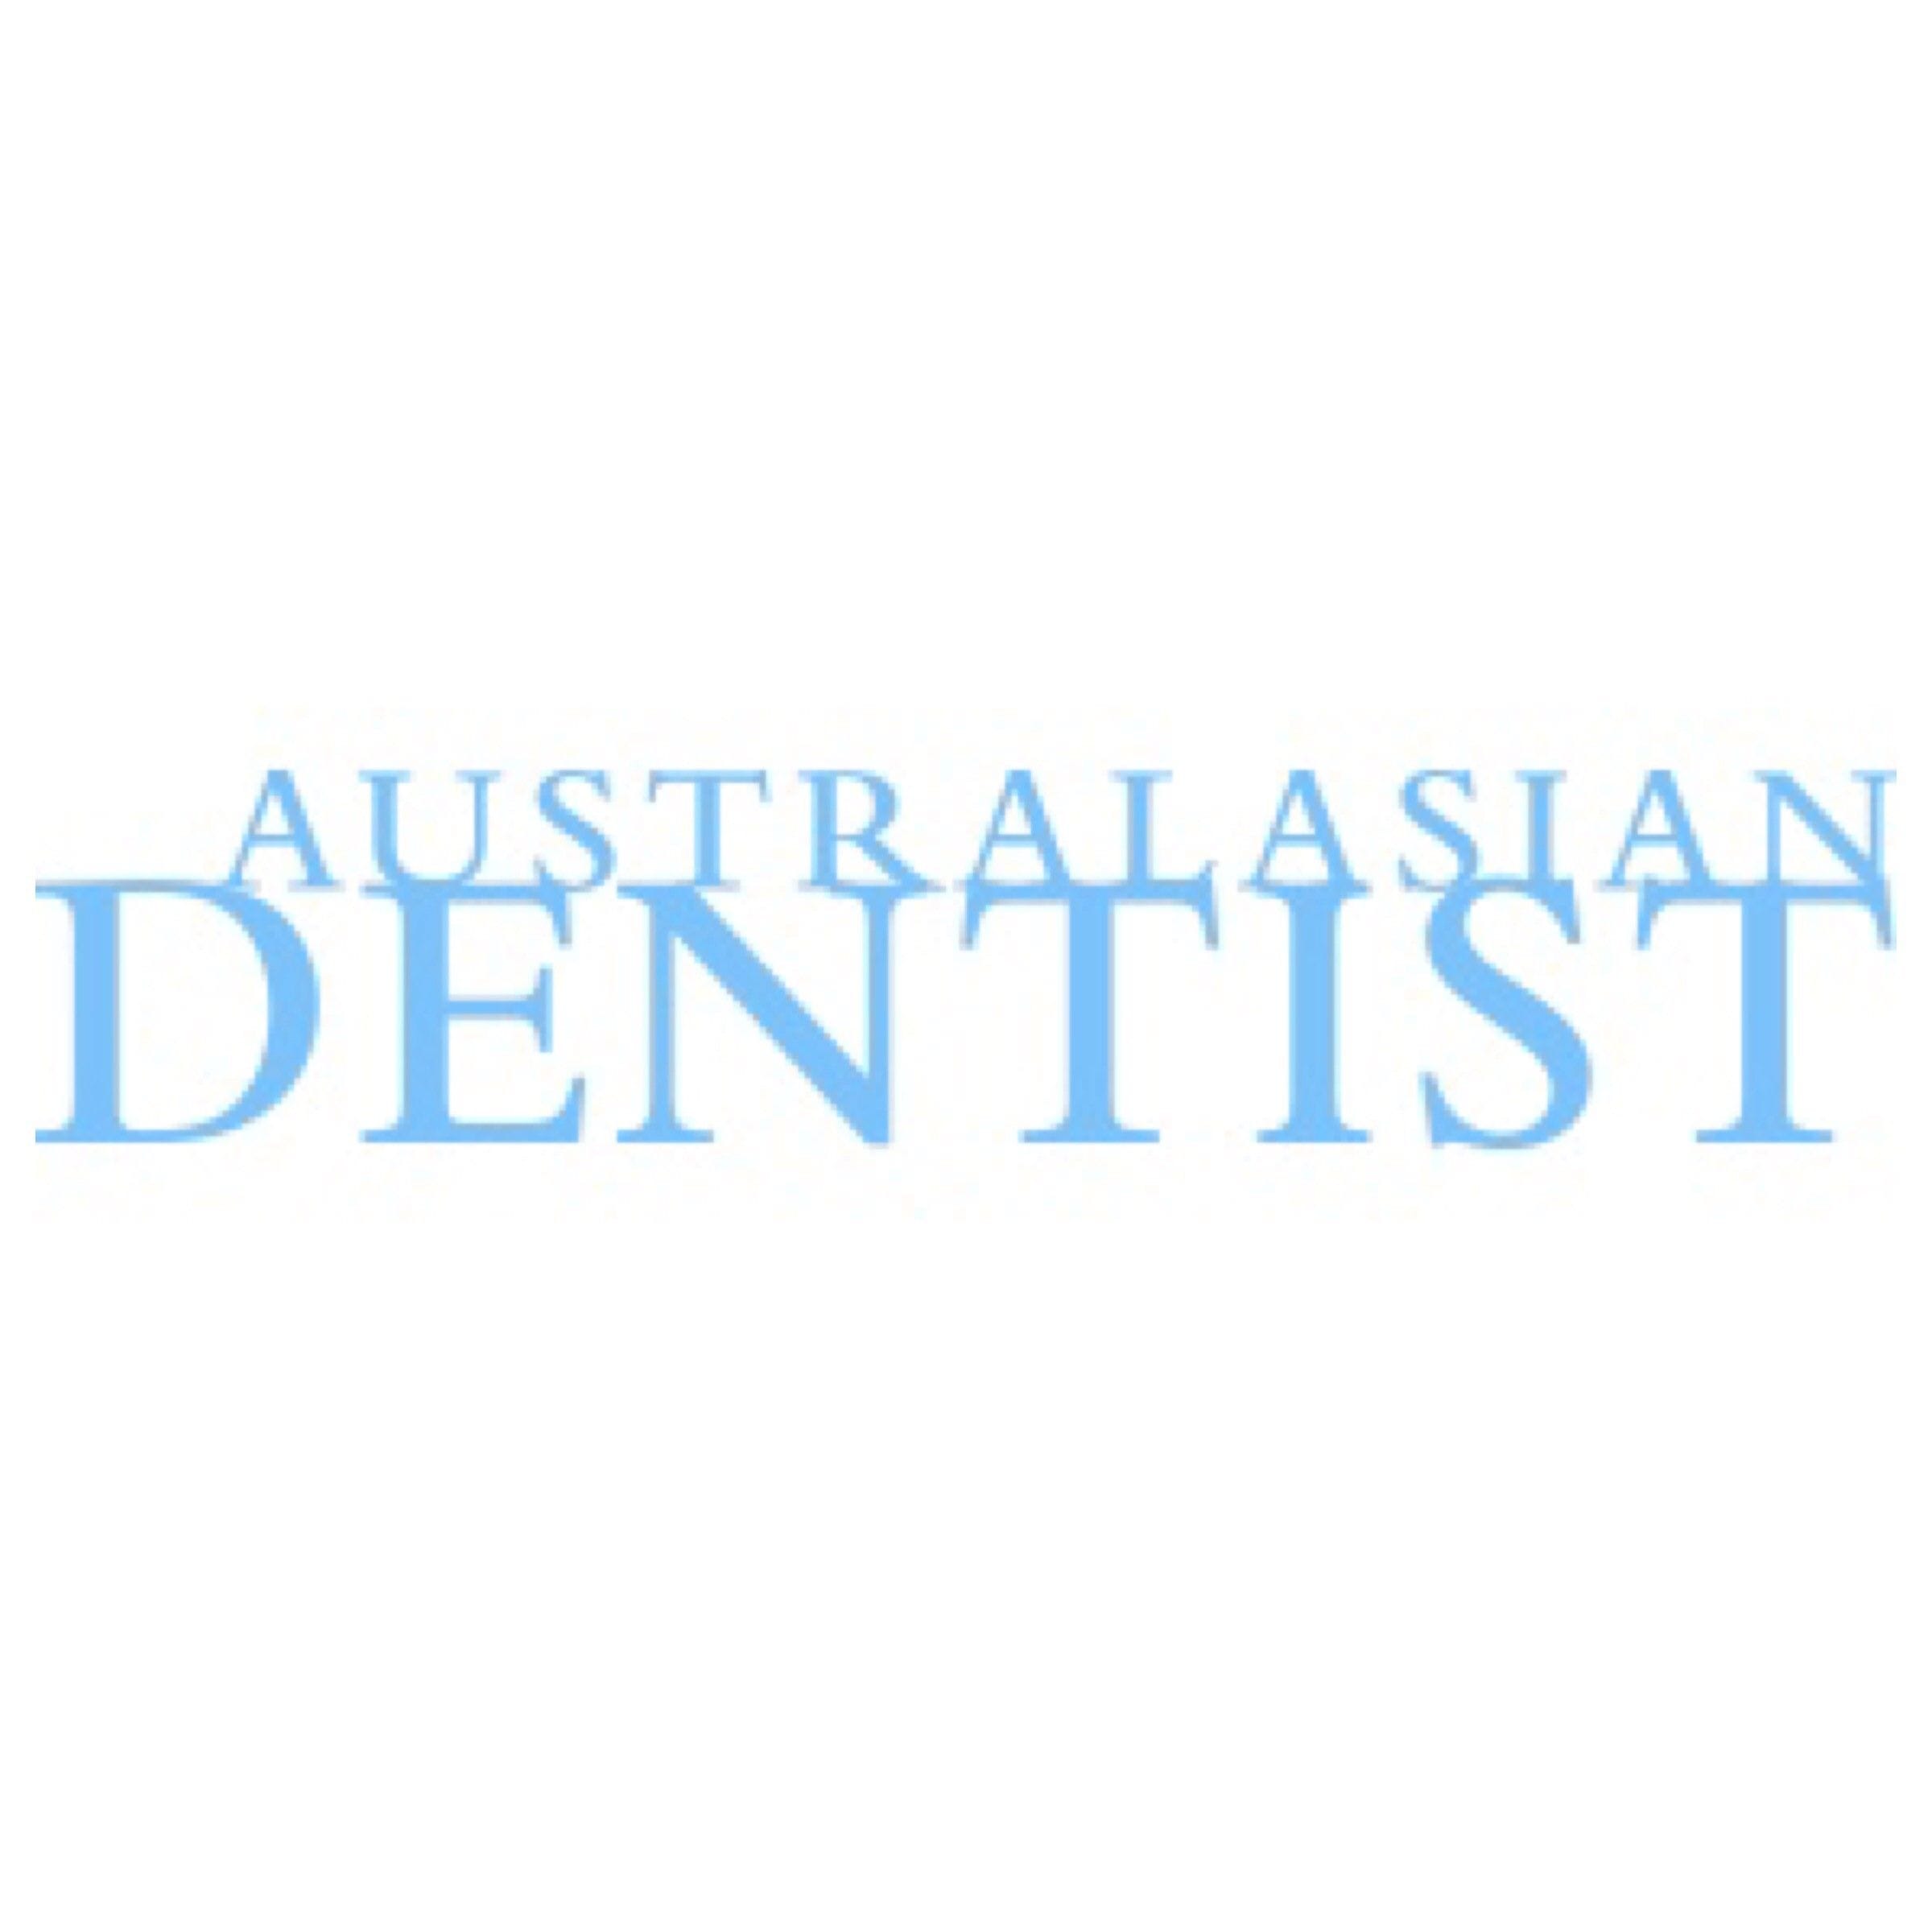 Australasian Dentist